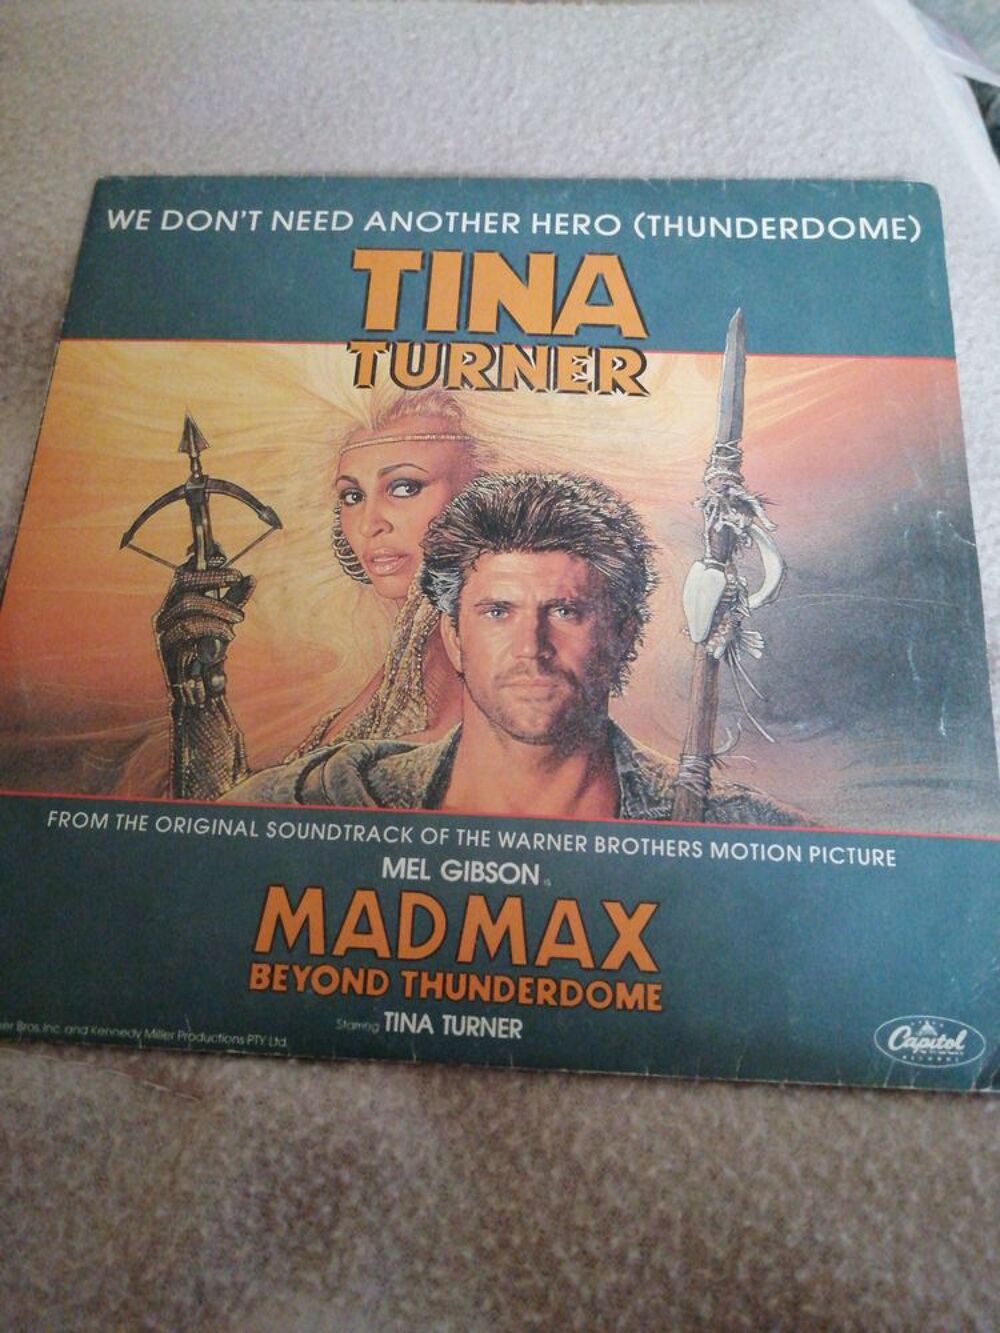 Vinyle 45 tours Tina Turner &quot;MASMAX&quot; 1985 CD et vinyles